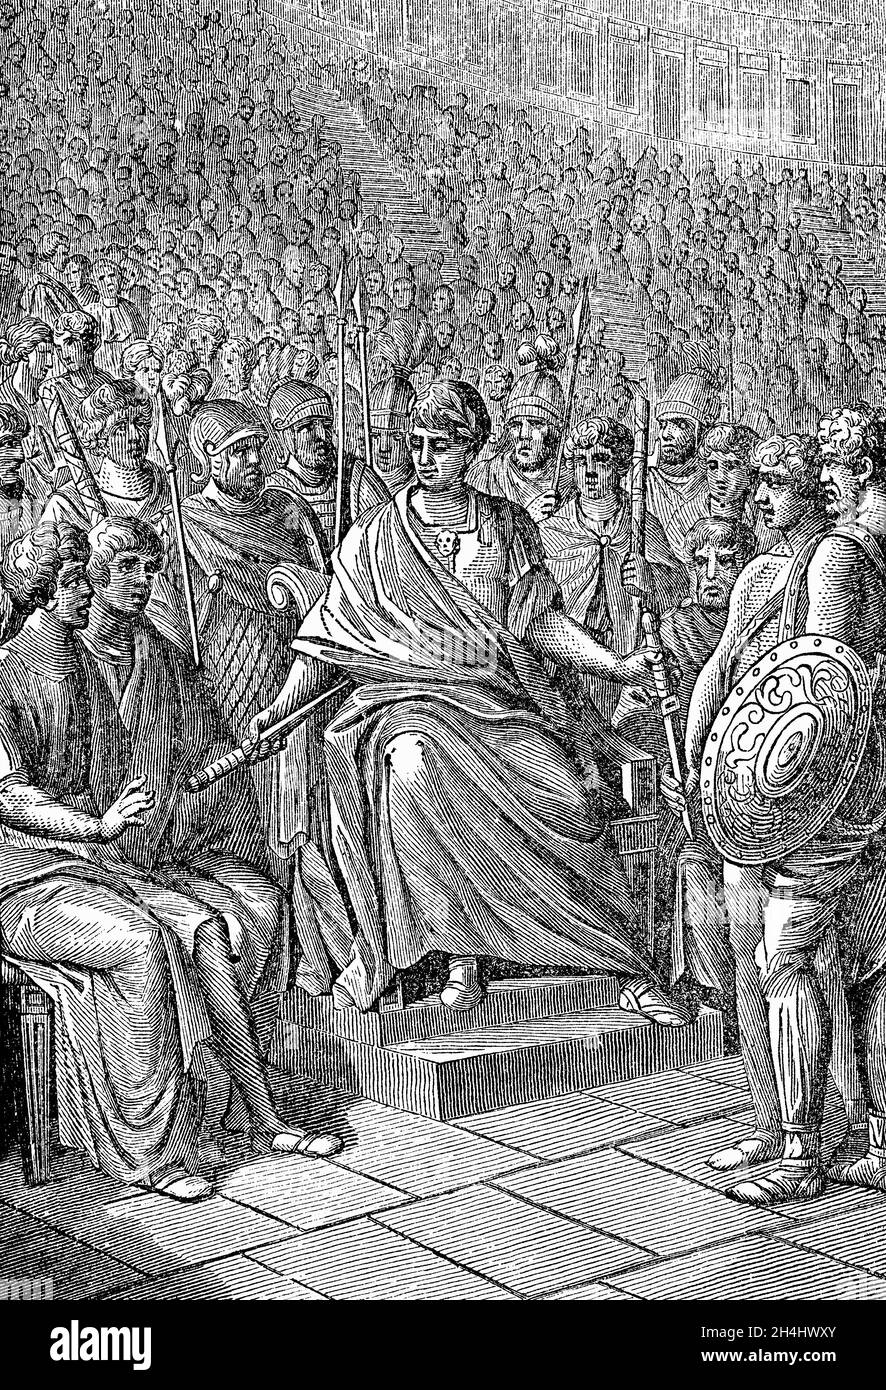 Illustration de Flavius Honorius (384-423), empereur romain de 393 à 423, à la fin du XIXe siècle, il termine le combat de gladiateurs.Il était le plus jeune fils de l'empereur Théodosius I et sa première femme Aelia Flaccila.En 410, pendant le règne de Honoreus sur l'Empire romain occidental, Rome fut mise à pied pour la première fois en près de 800 ans. Banque D'Images